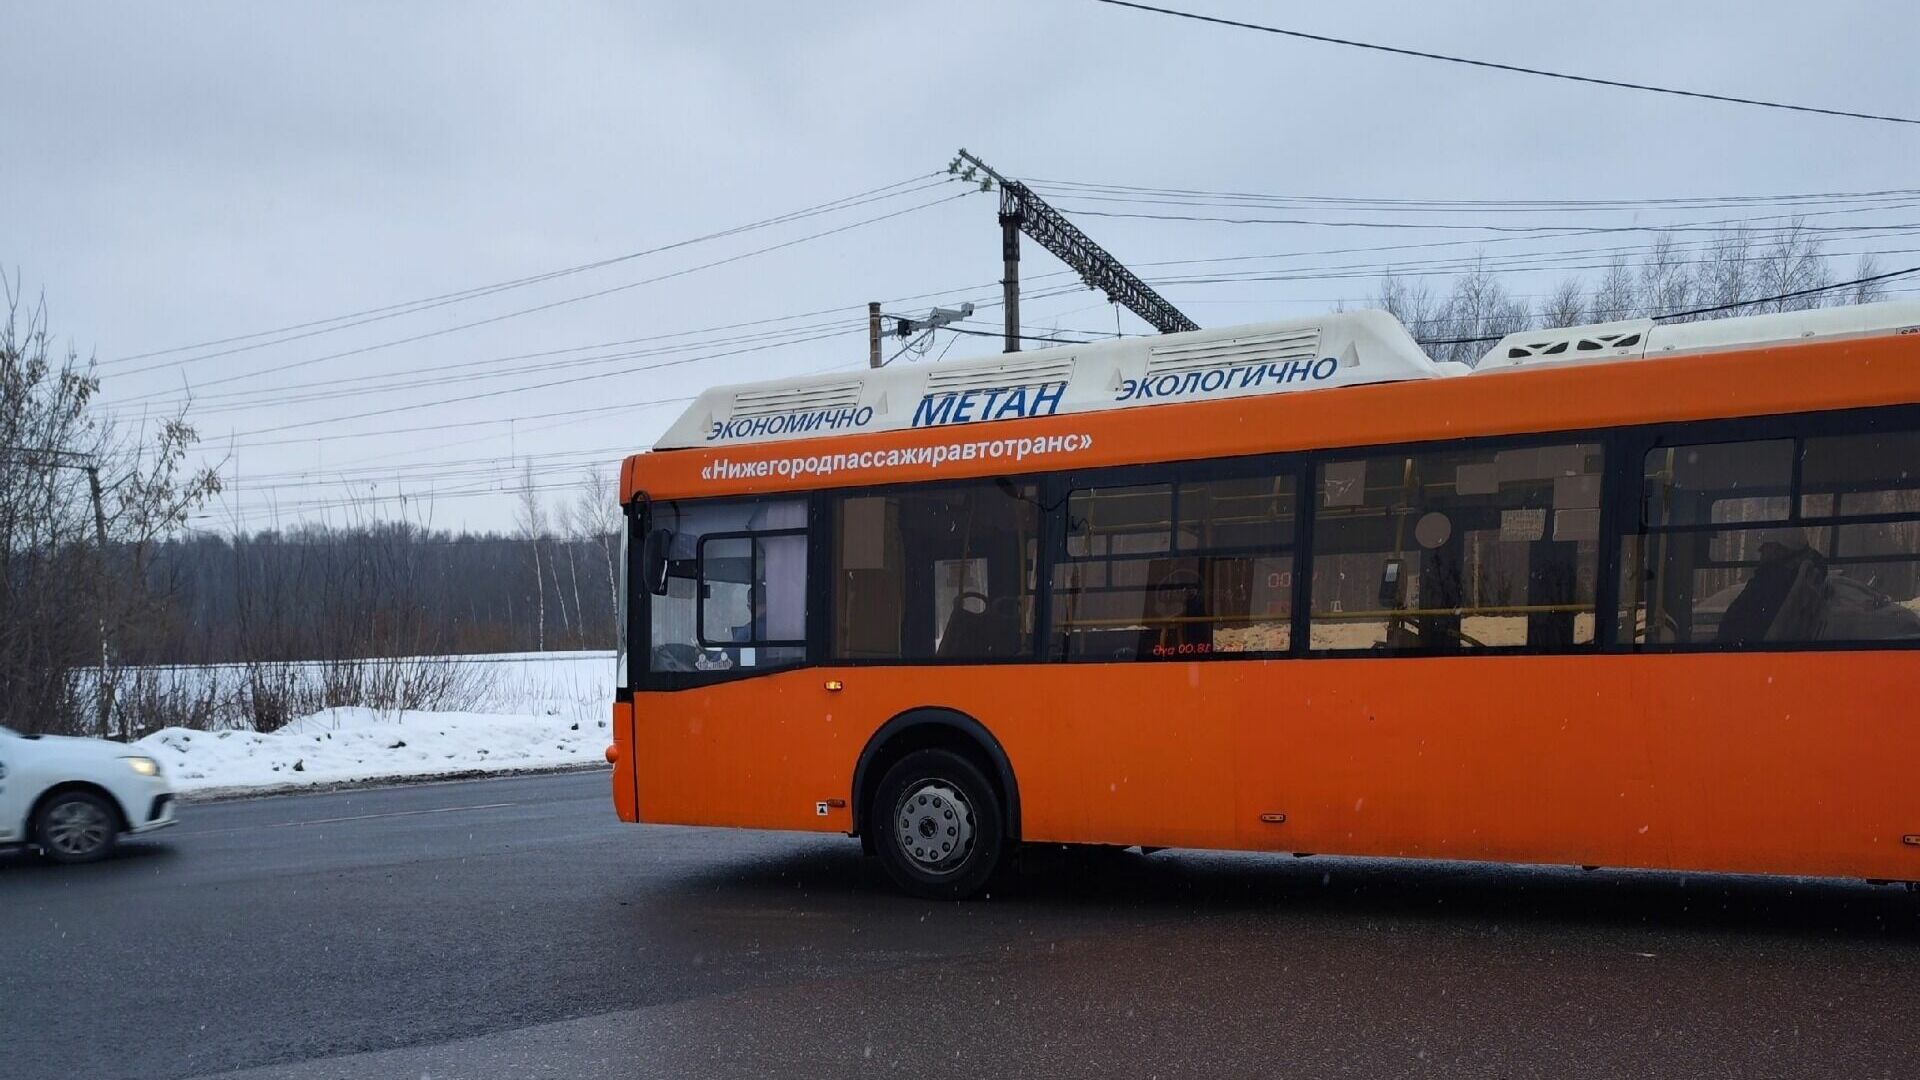 Мужчина похитил терминал для оплаты проезда из автобуса в Нижнем Новгороде